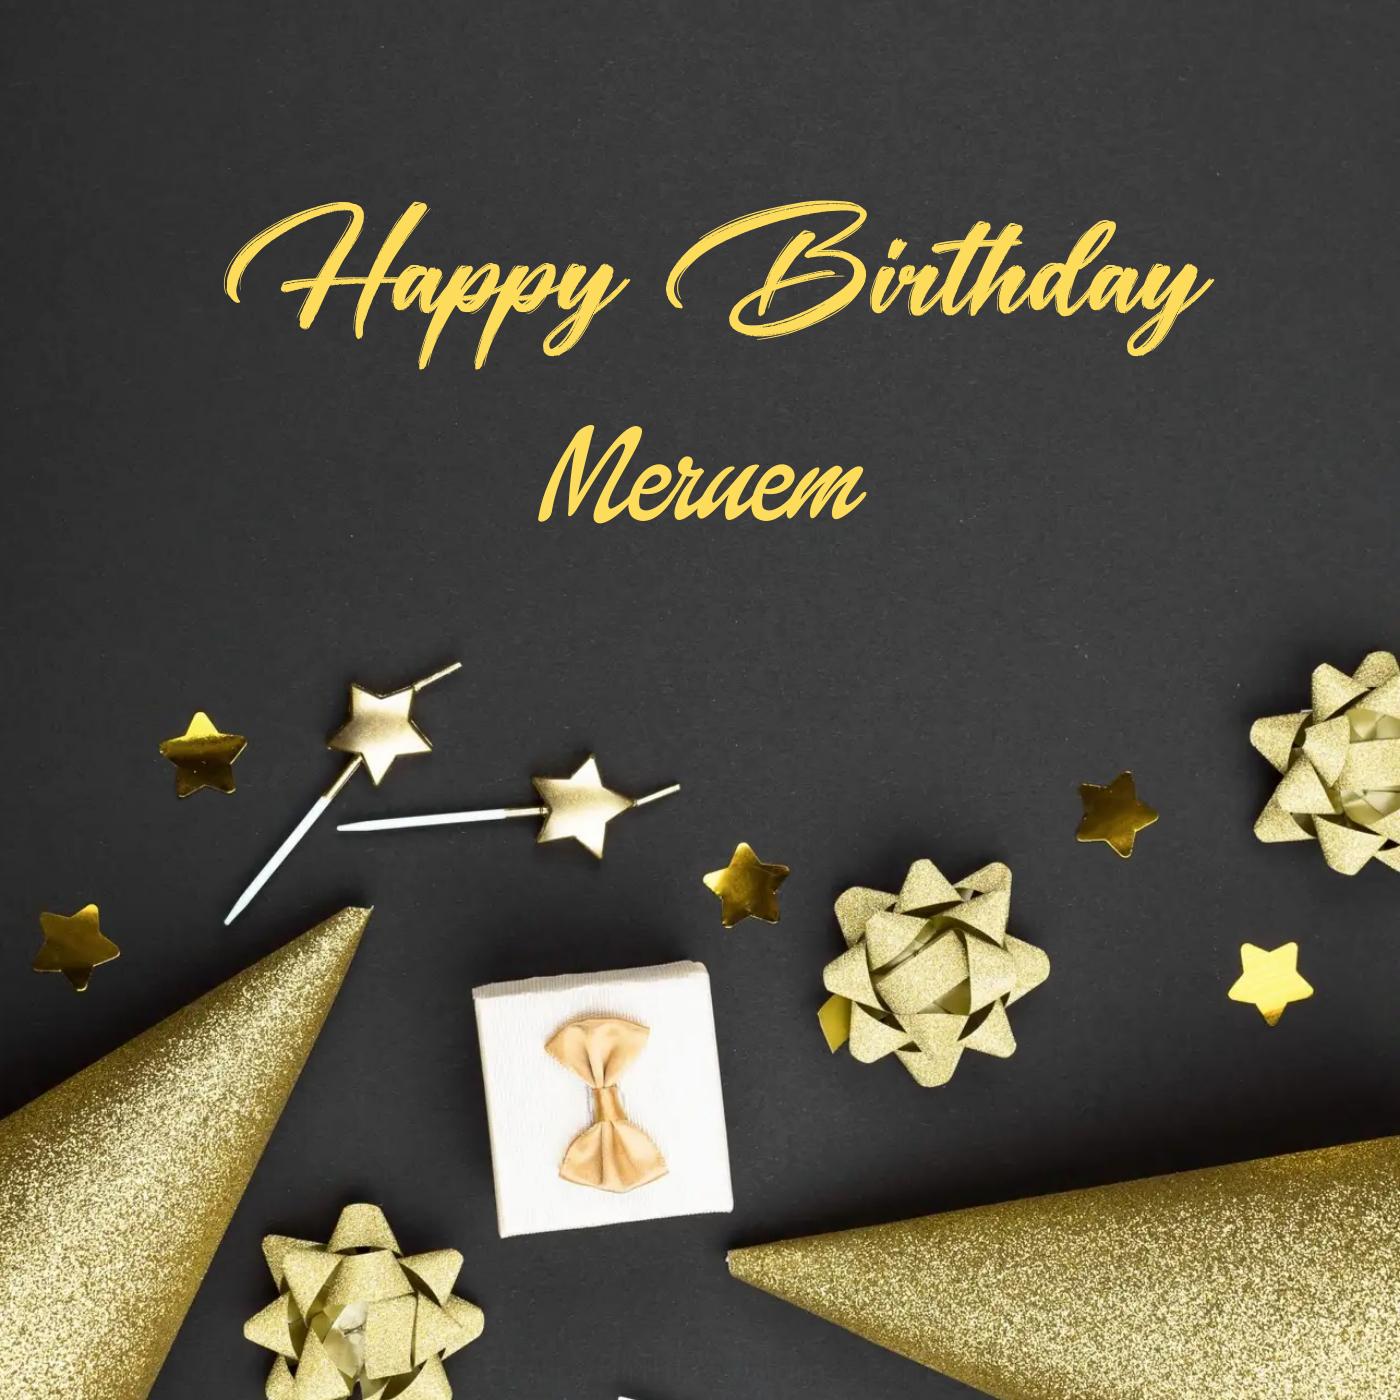 Happy Birthday Meruem Golden Theme Card